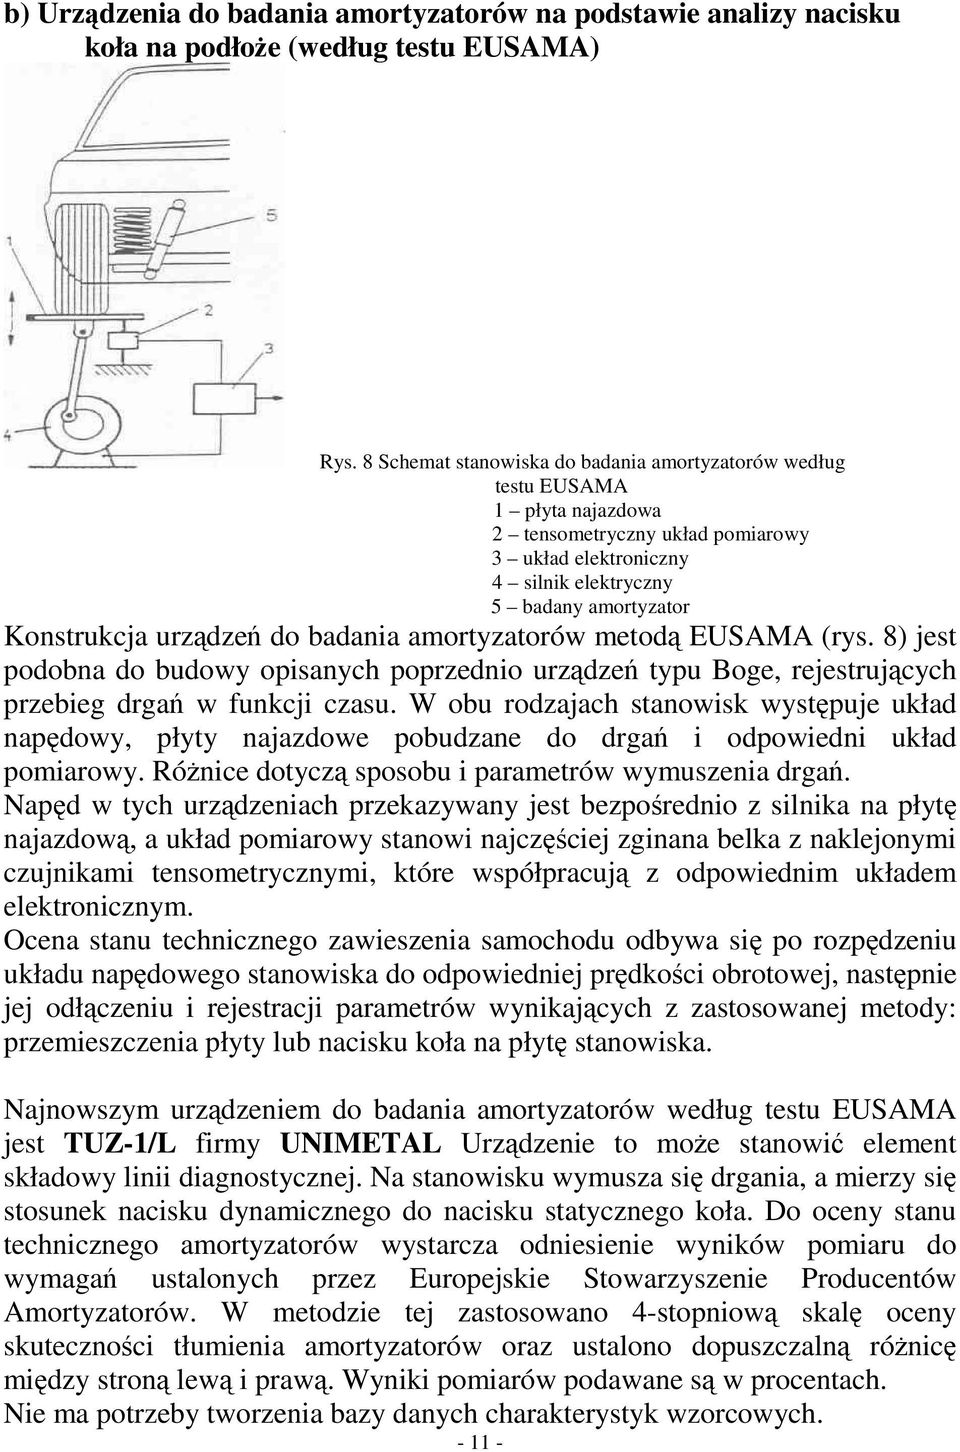 do badania amortyzatorów metod EUSAMA (rys. 8) jest podobna do budowy opisanych poprzednio urzdze typu Boge, rejestrujcych przebieg drga w funkcji czasu.